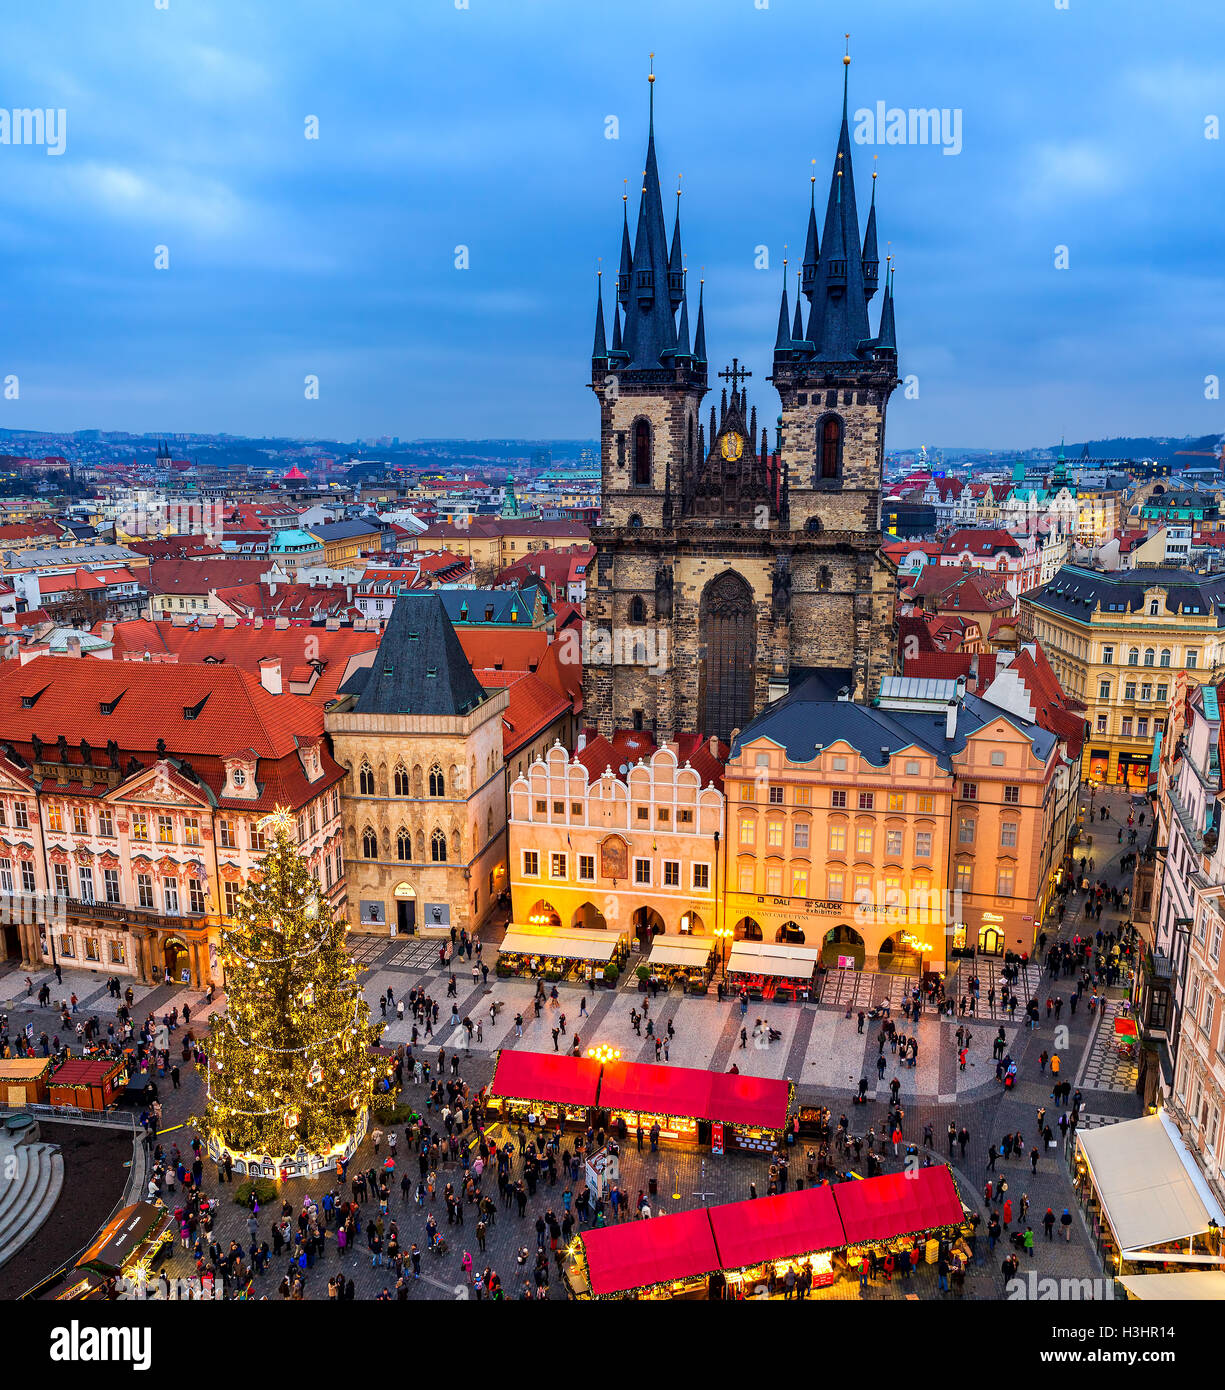 Blick von oben auf Tyn Kirche, Weihnachtsbaum und traditionellen Markt auf dem Altstädter Ring in Prag. Stockfoto